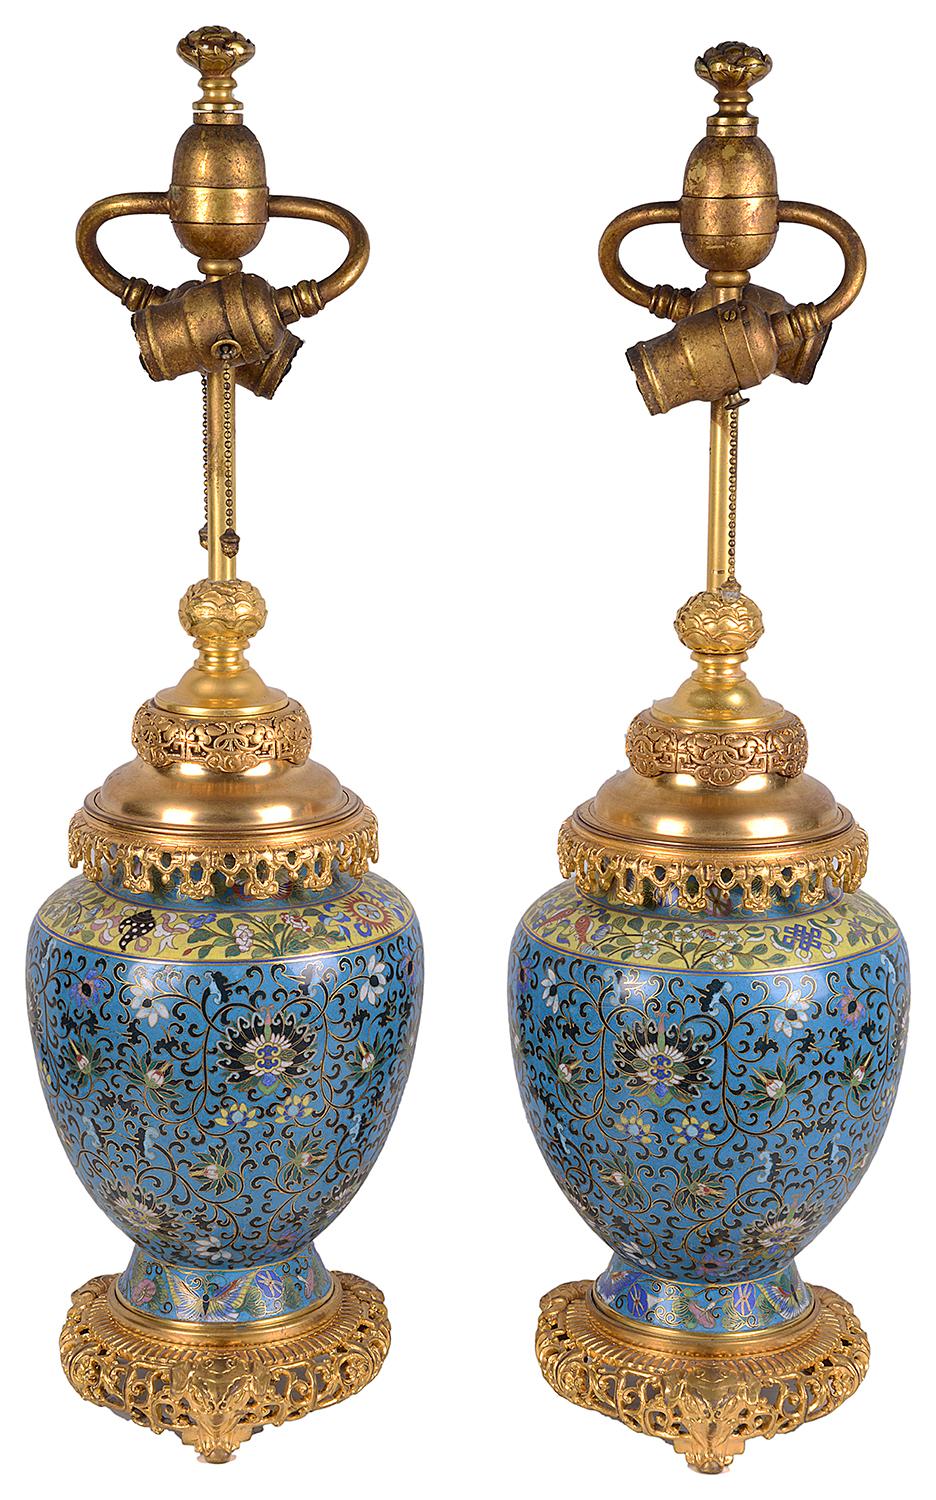 Très bonne paire de vases / lampes en émail cloisonné et en bronze doré de la fin du XIXe siècle. Chacun d'entre eux présente de magnifiques couleurs classiques et audacieuses, des motifs en forme de volutes et des décorations feuillagées.